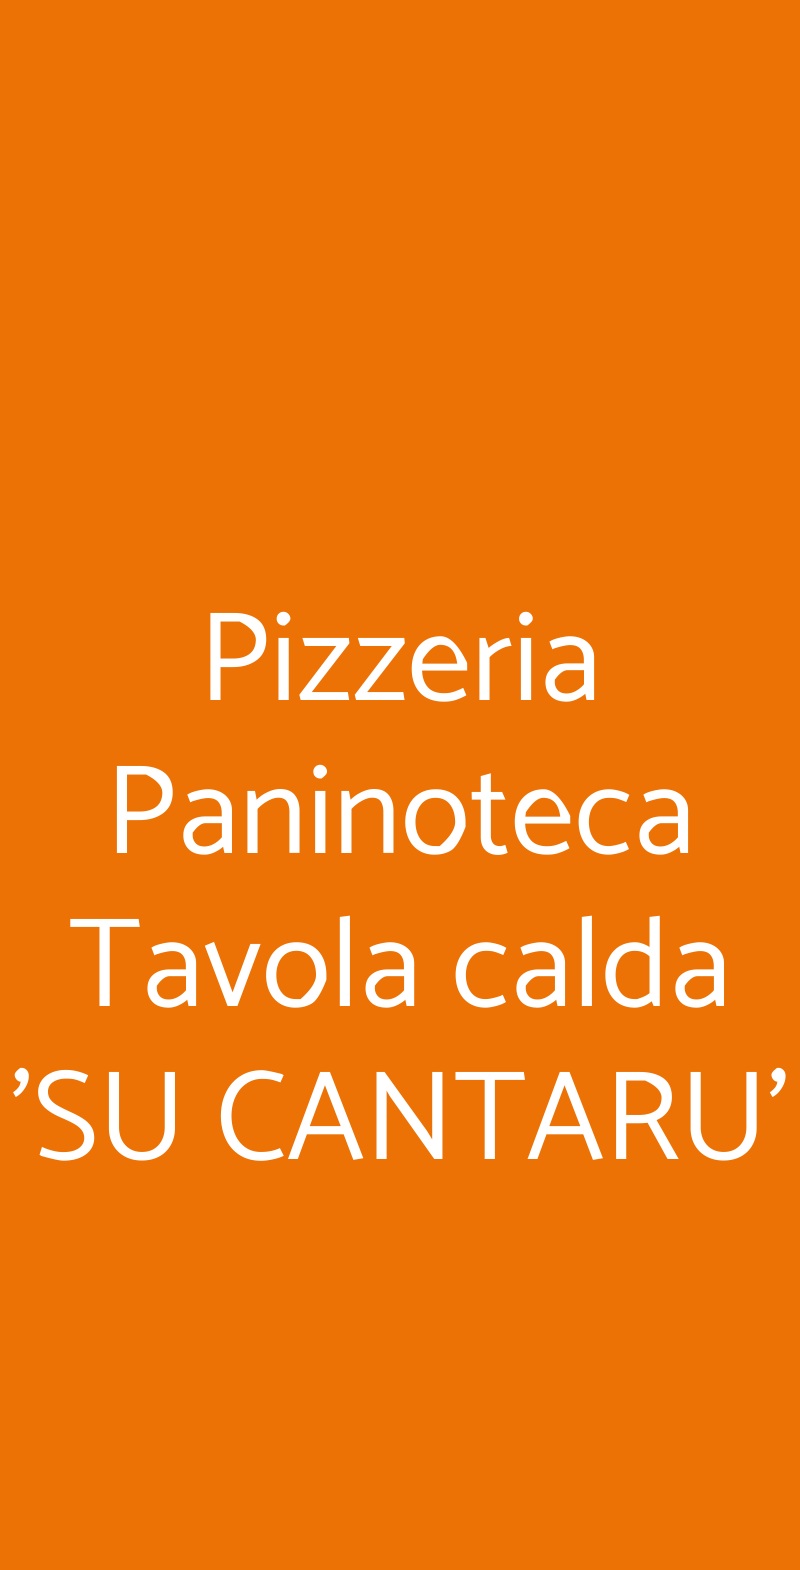 Pizzeria Paninoteca Tavola calda 'SU CANTARU' Bitti menù 1 pagina